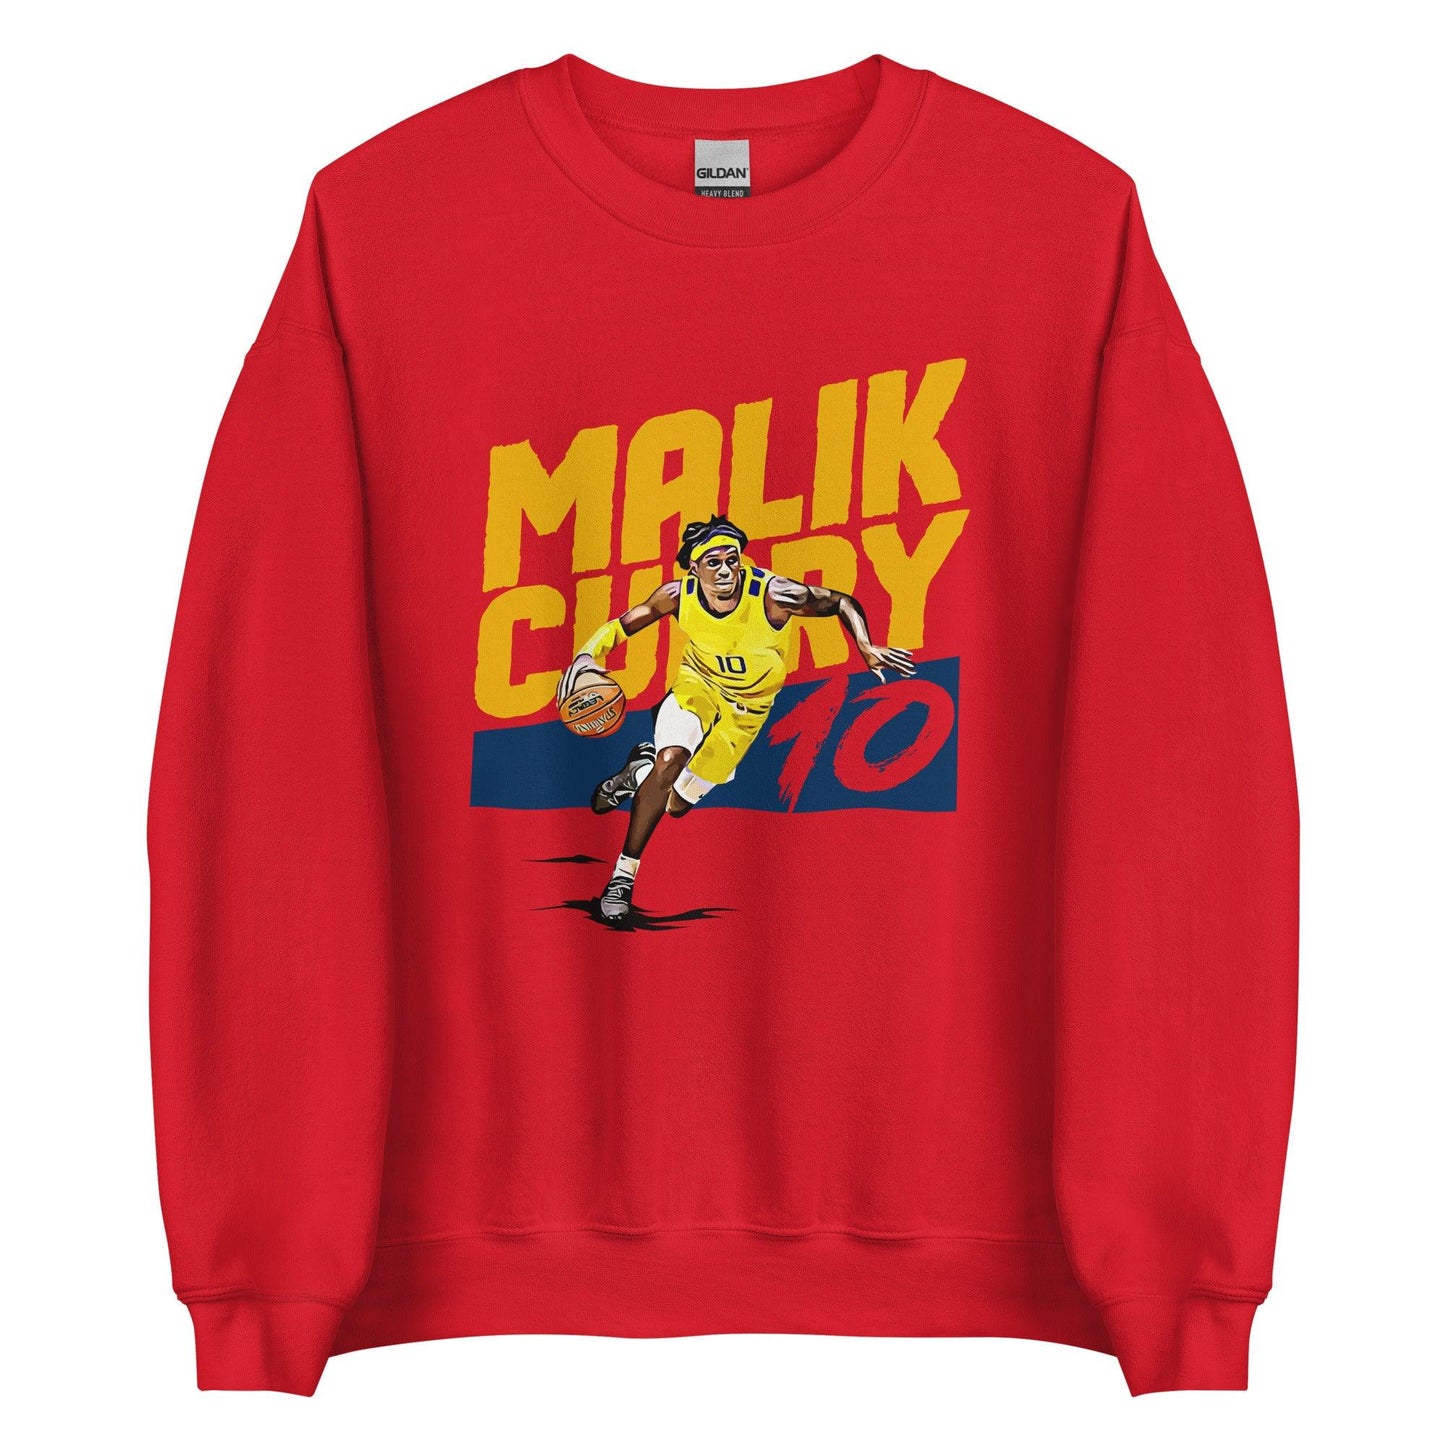 Malik Curry “Essential” Sweatshirt - Fan Arch